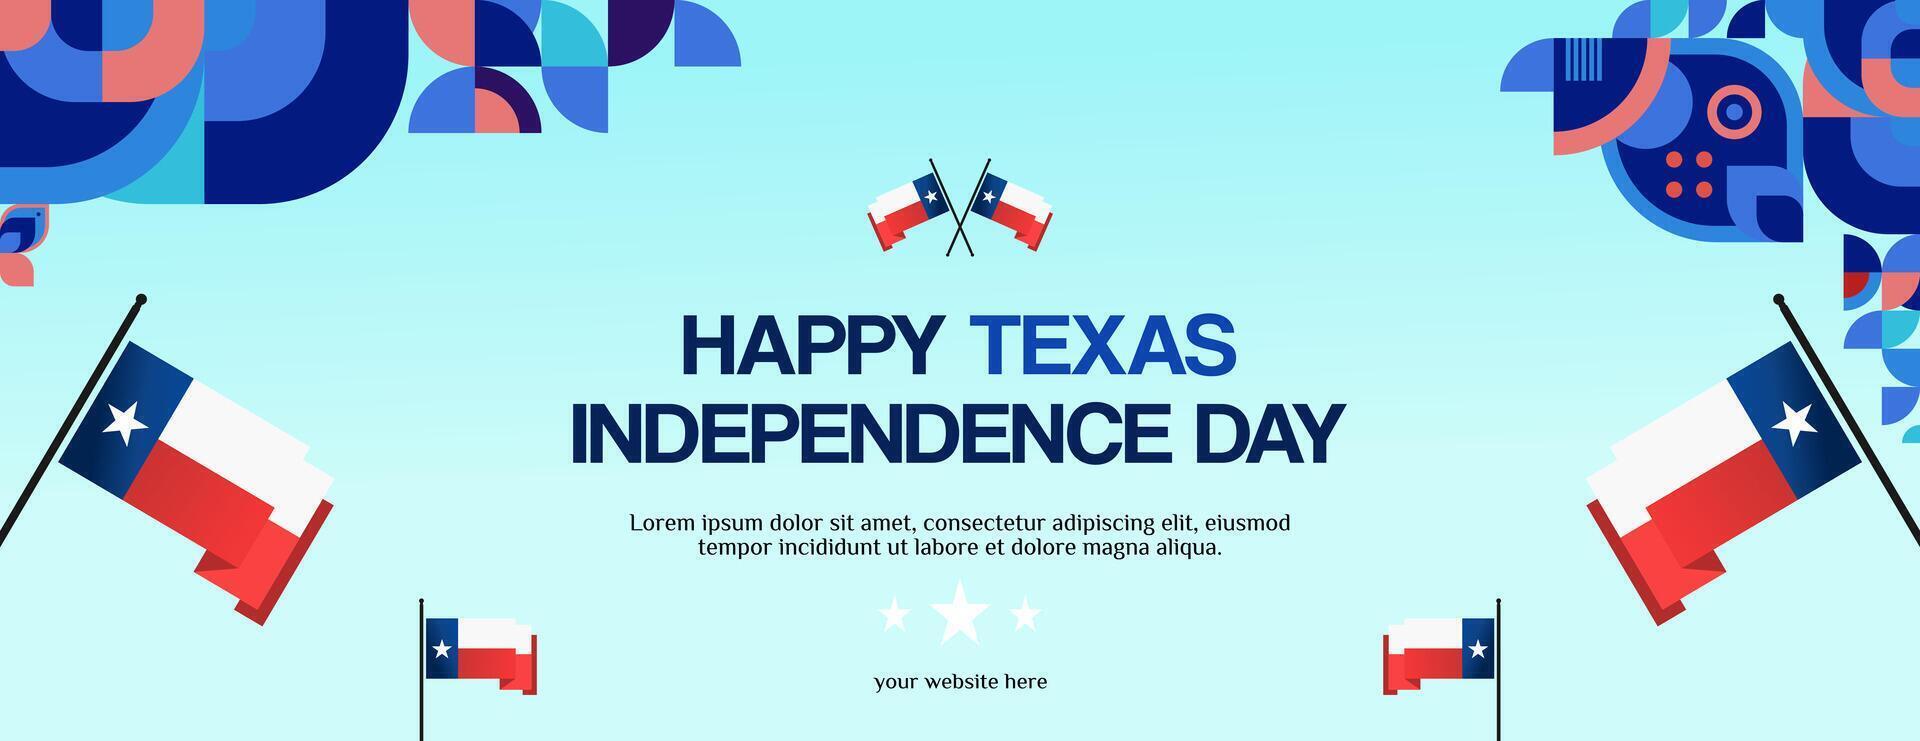 Texas independencia día bandera en vistoso moderno geométrico estilo. contento nacional independencia día saludo tarjeta cubrir con tipografía. vector ilustración para nacional fiesta celebracion fiesta